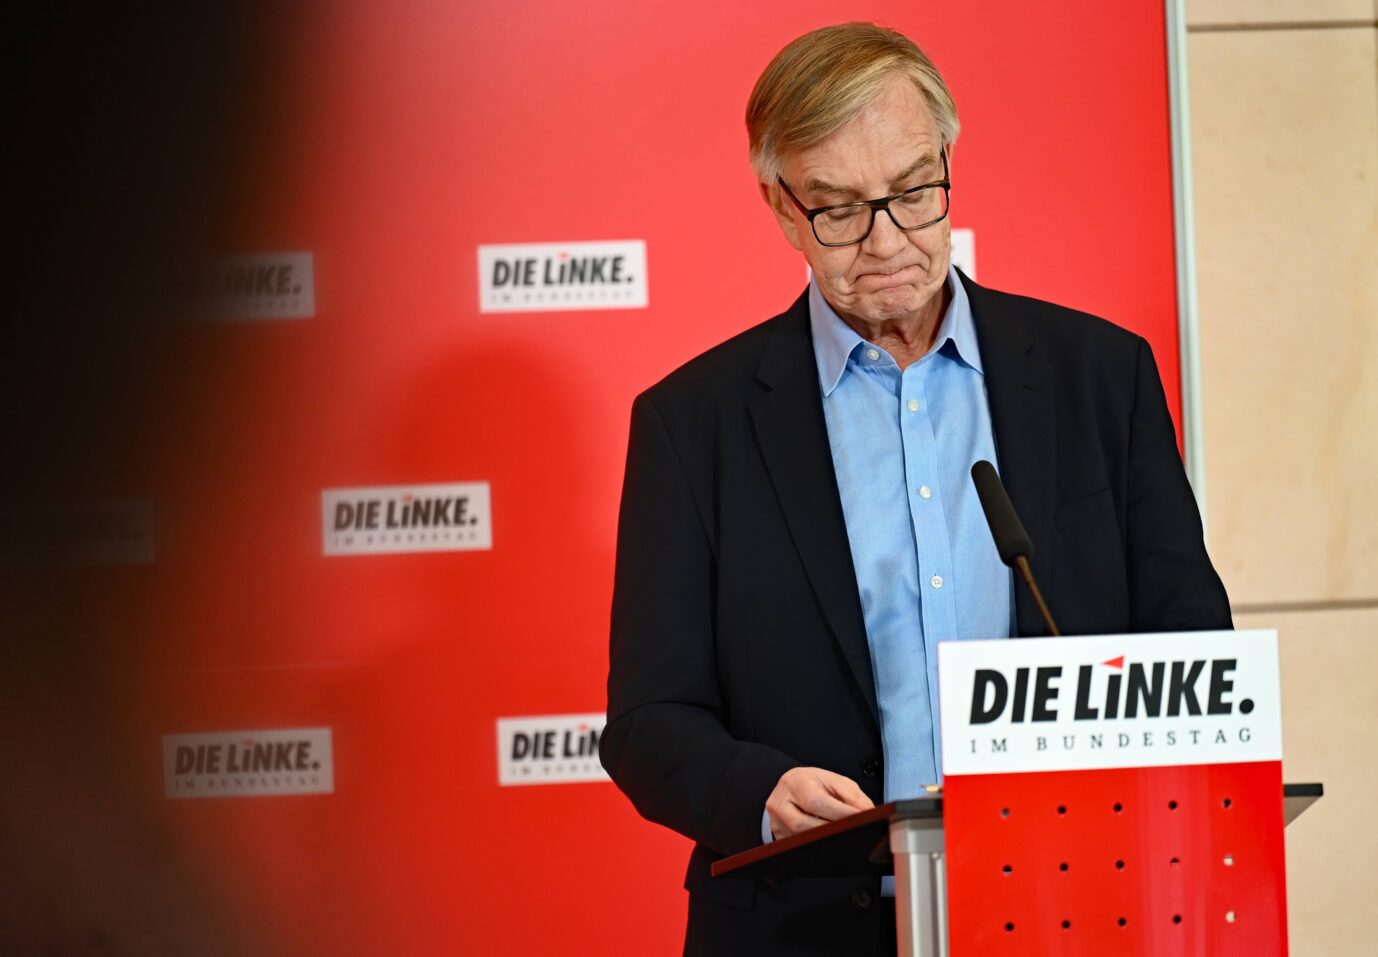 Der Fraktionsvorsitzende der Linkspartei im Bundestag, Dietmar Bartsch, wirft nach Amira Mohamed Ali ebenfalls das Handtuch Foto: picture alliance/dpa | Philipp Znidar